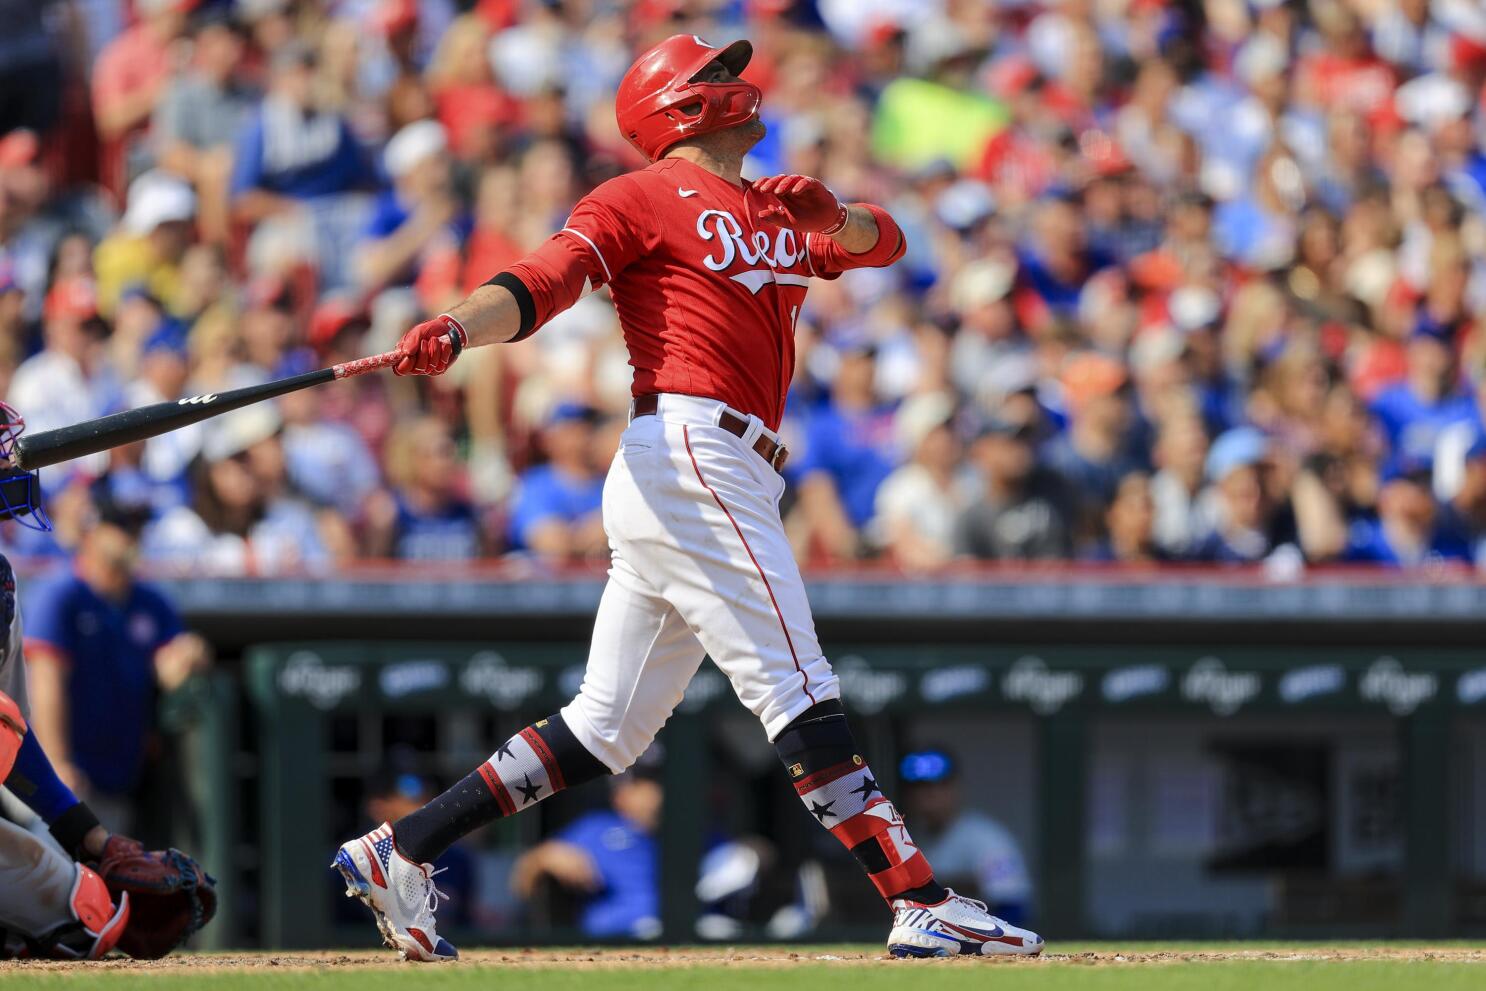 Louisville Bats snag Cincinnati Reds first baseman Joey Votto